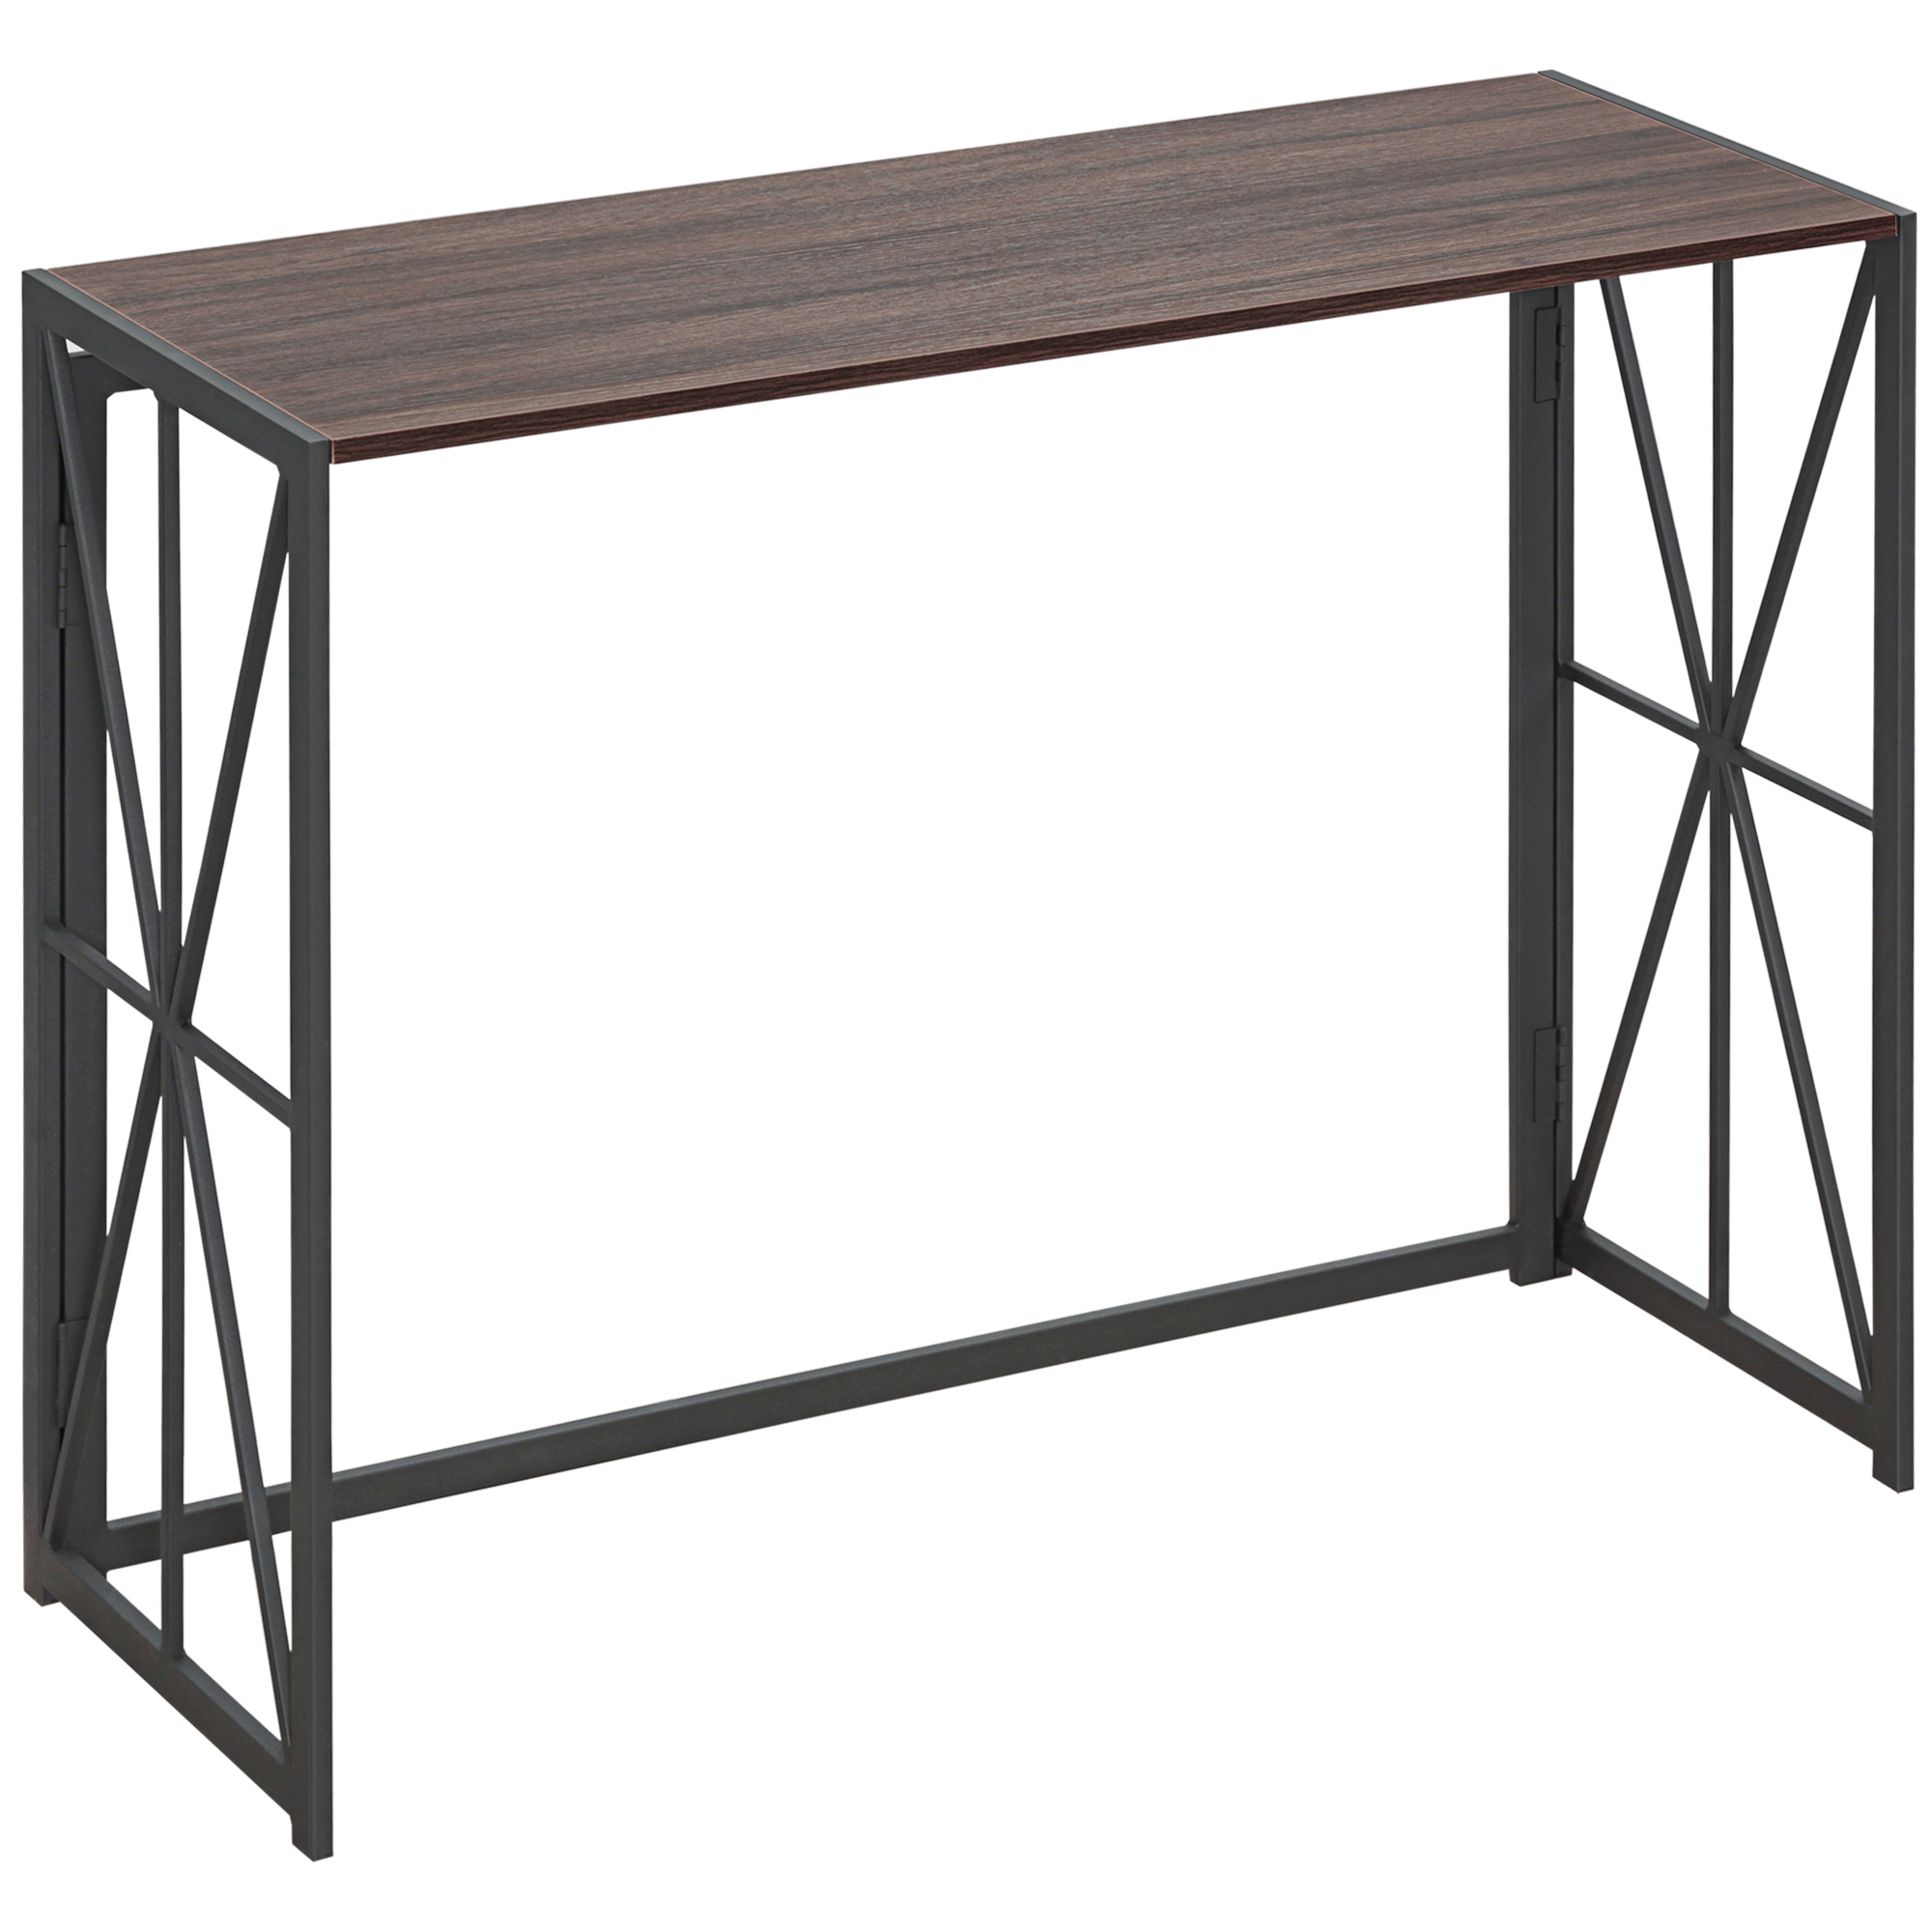 Τραπέζι κονσόλας διαδρόμου HOMCOM Πτυσσόμενο Industrial Style σε ξύλο και μέταλλο